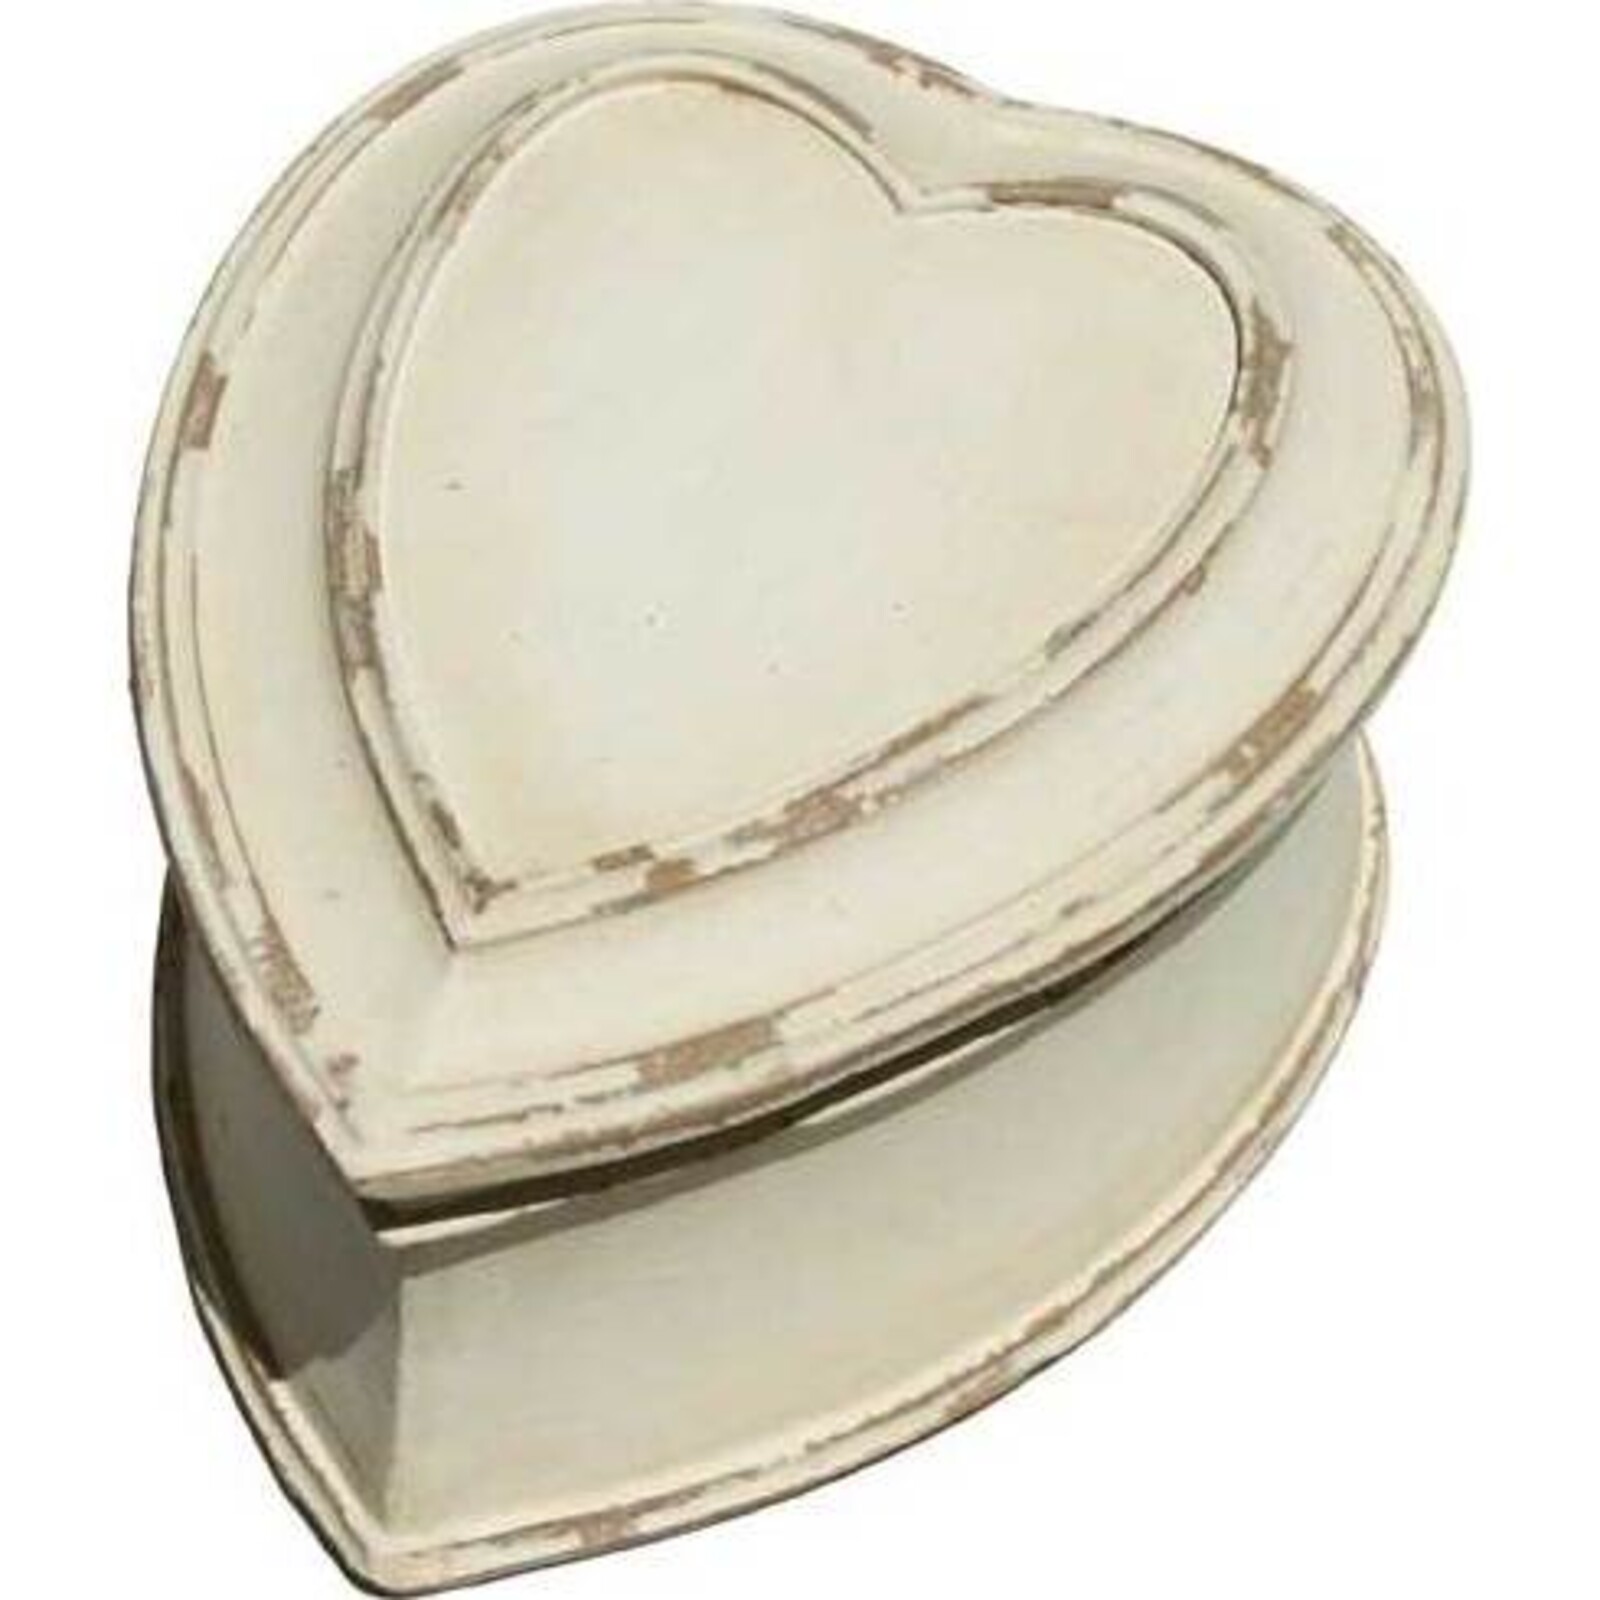 Heart Shaped Trinket Box - Small